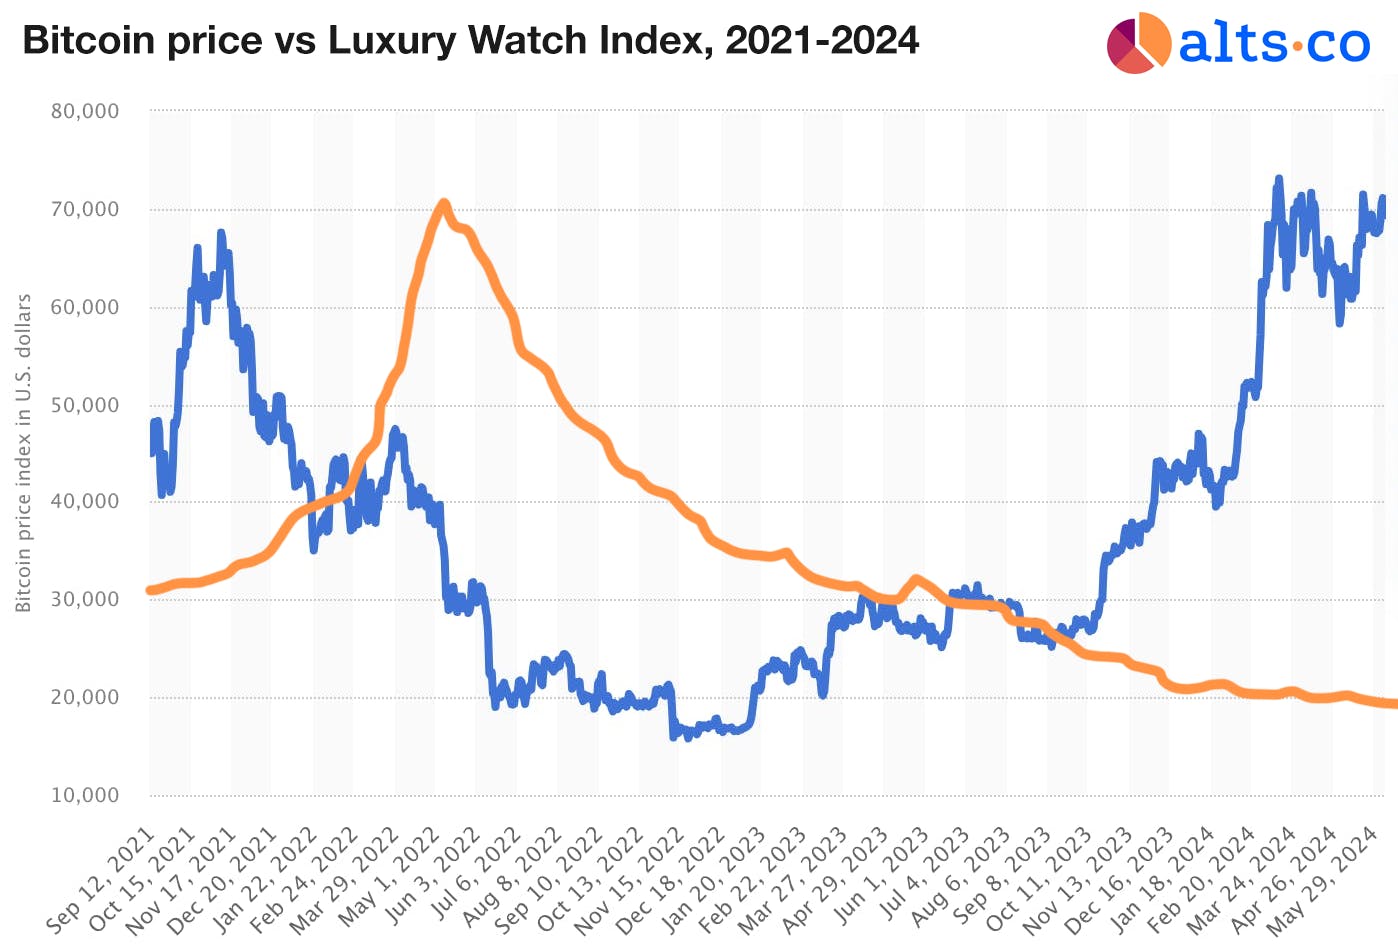 luxury watch price index vs crypto bitcoin prices